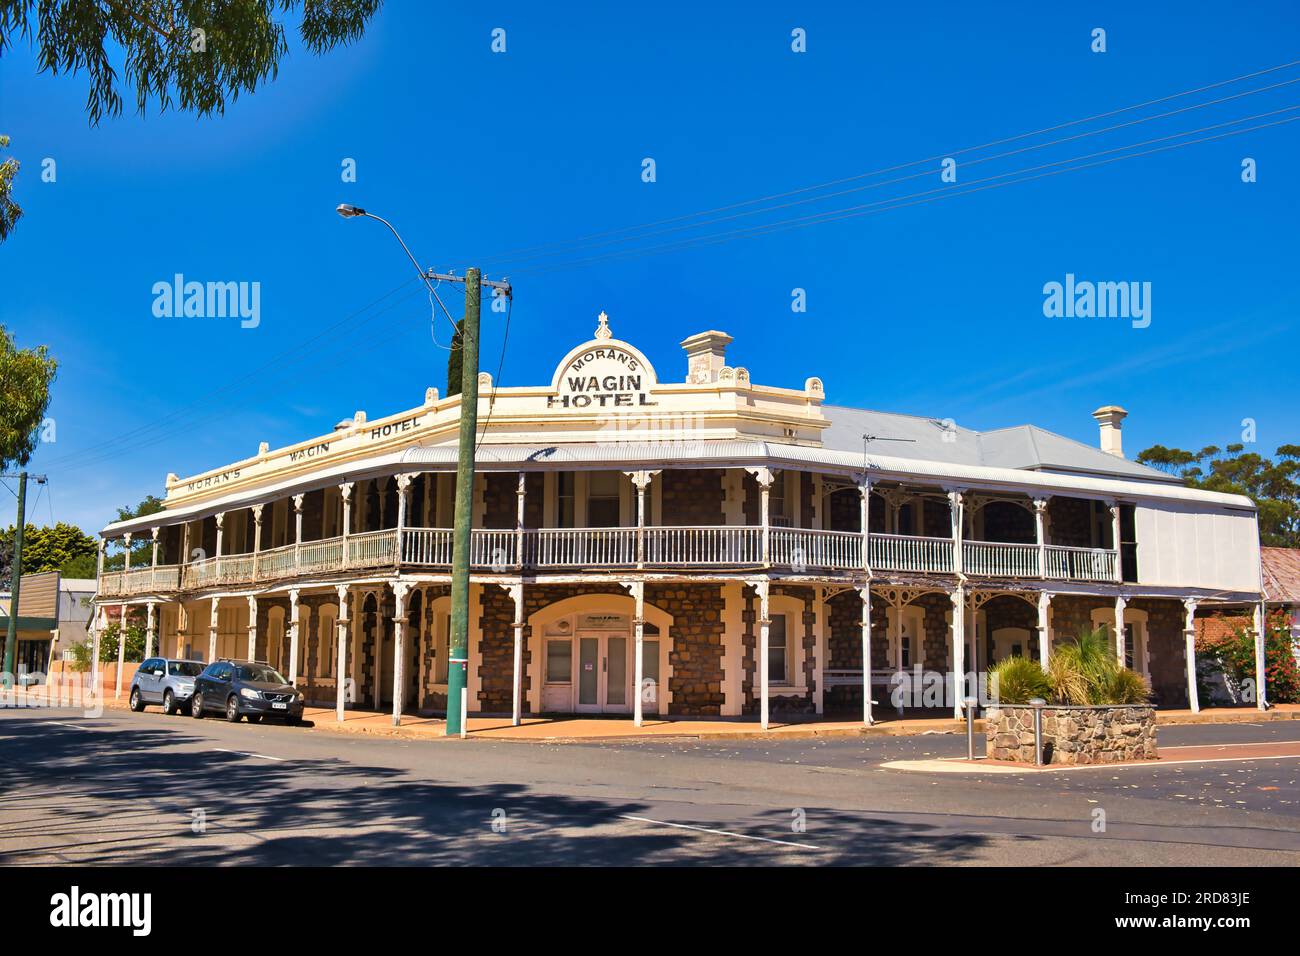 The vintage Moran's Wagin Hotel in Wagin, a small town in the Western Australian Wheatbelt. Stock Photo